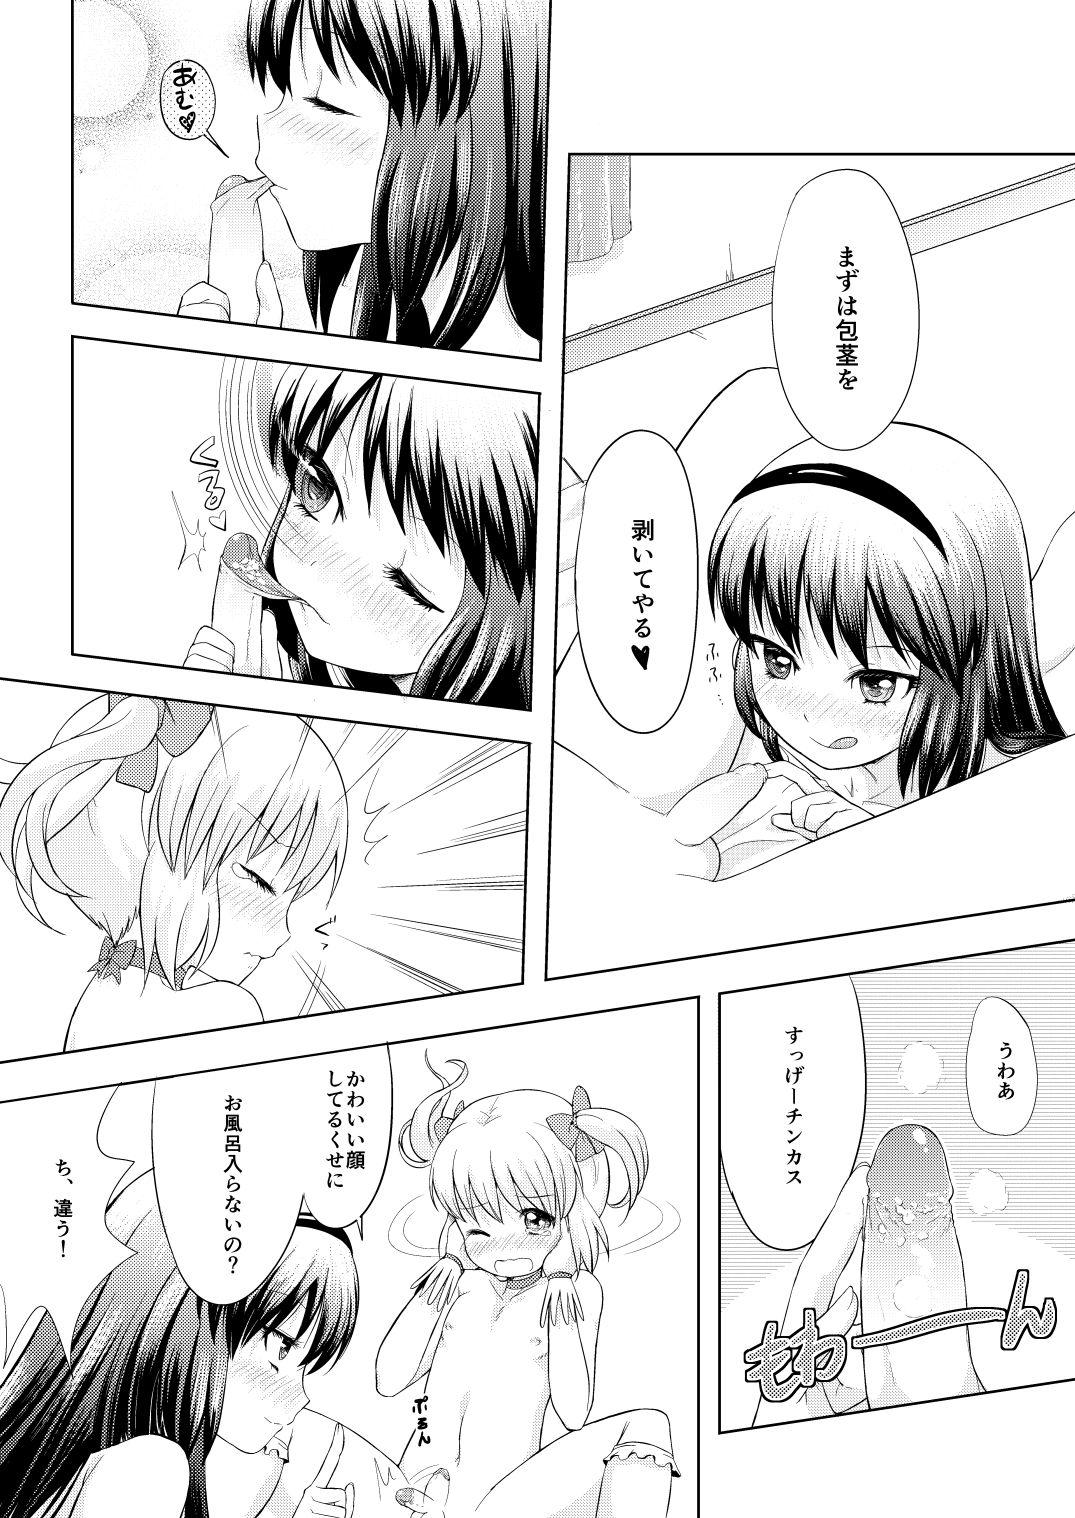 Climax Otokonoko Cosplay Manga Desu yo - Puella magi madoka magica Babe - Page 10